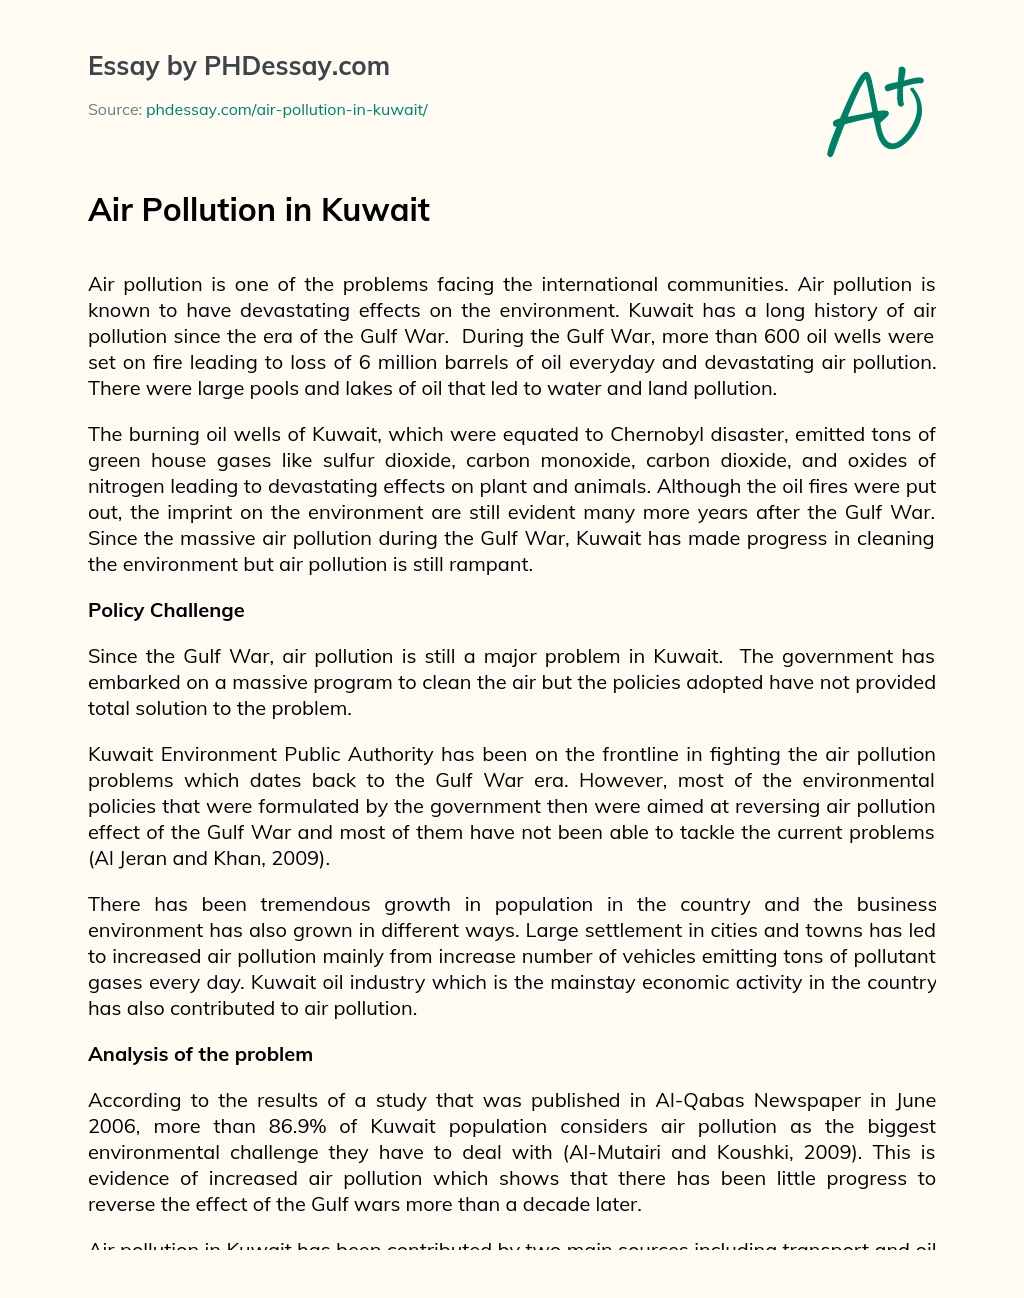 Air Pollution in Kuwait essay